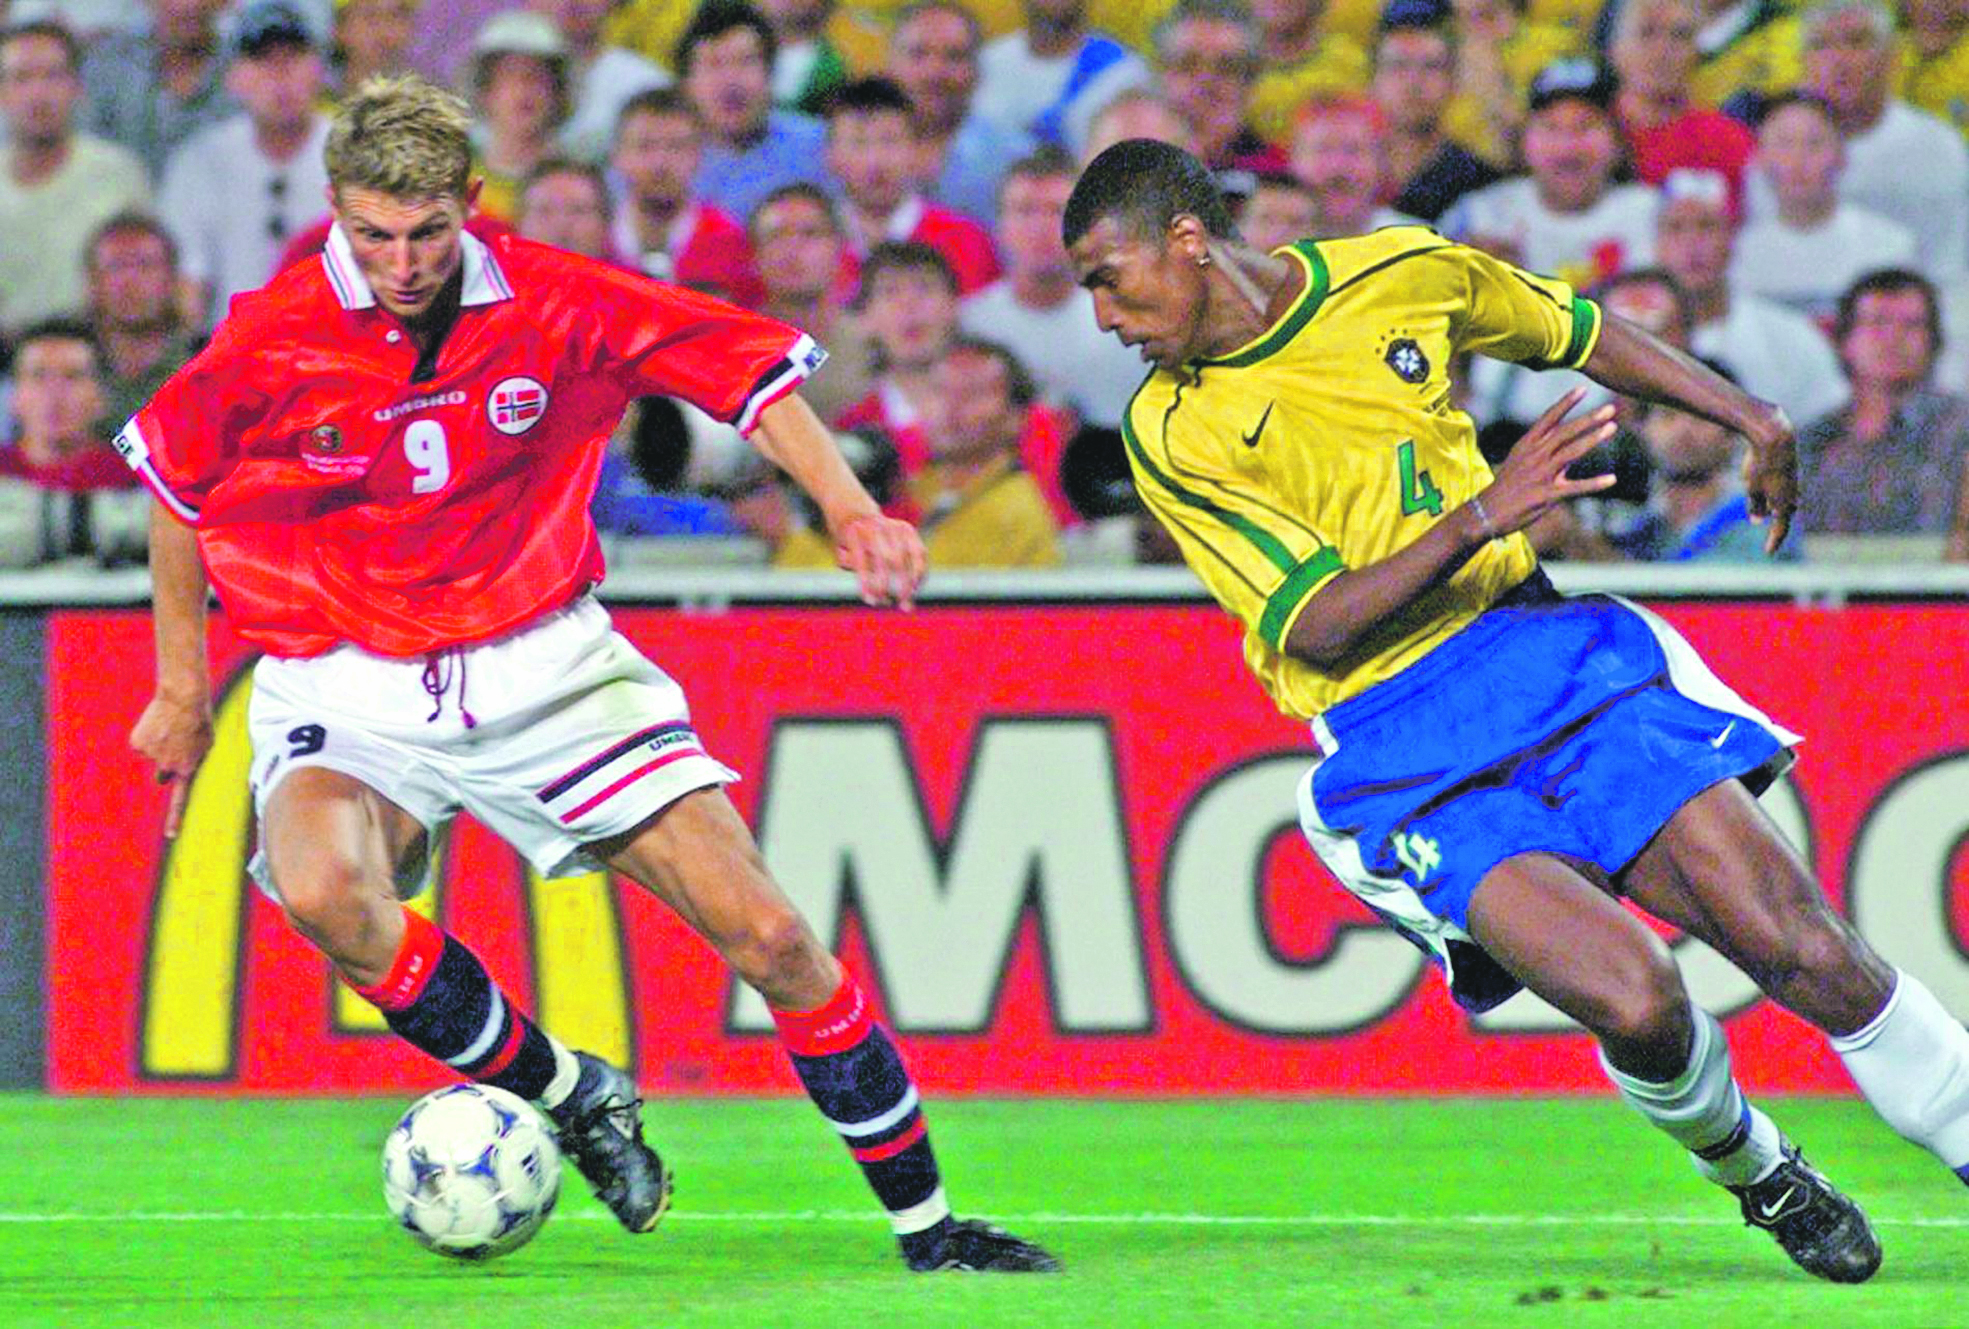 A statisztikákra építő Egil Olsen norvég válogatottja a világelitig jutott, az 1998-as vb-n Brazíliát is legyőzte (Képarchívum)tja a világelitig jutott, az 1998-as vb-n Brazíliát is legyőzte (Képarchívum)